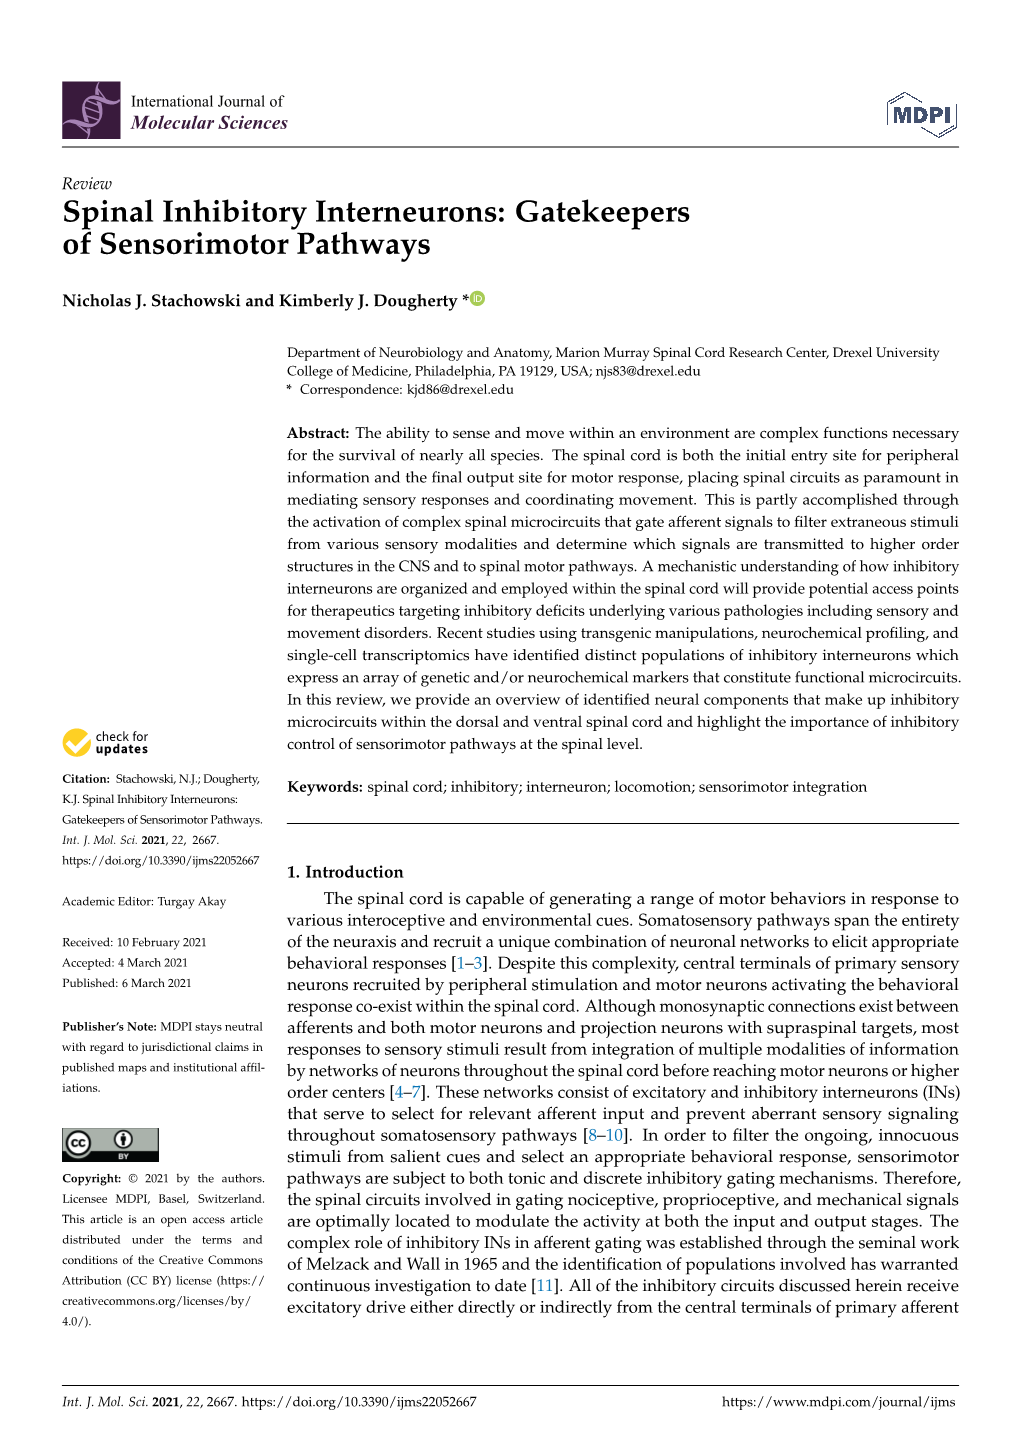 Spinal Inhibitory Interneurons: Gatekeepersof Sensorimotor Pathways